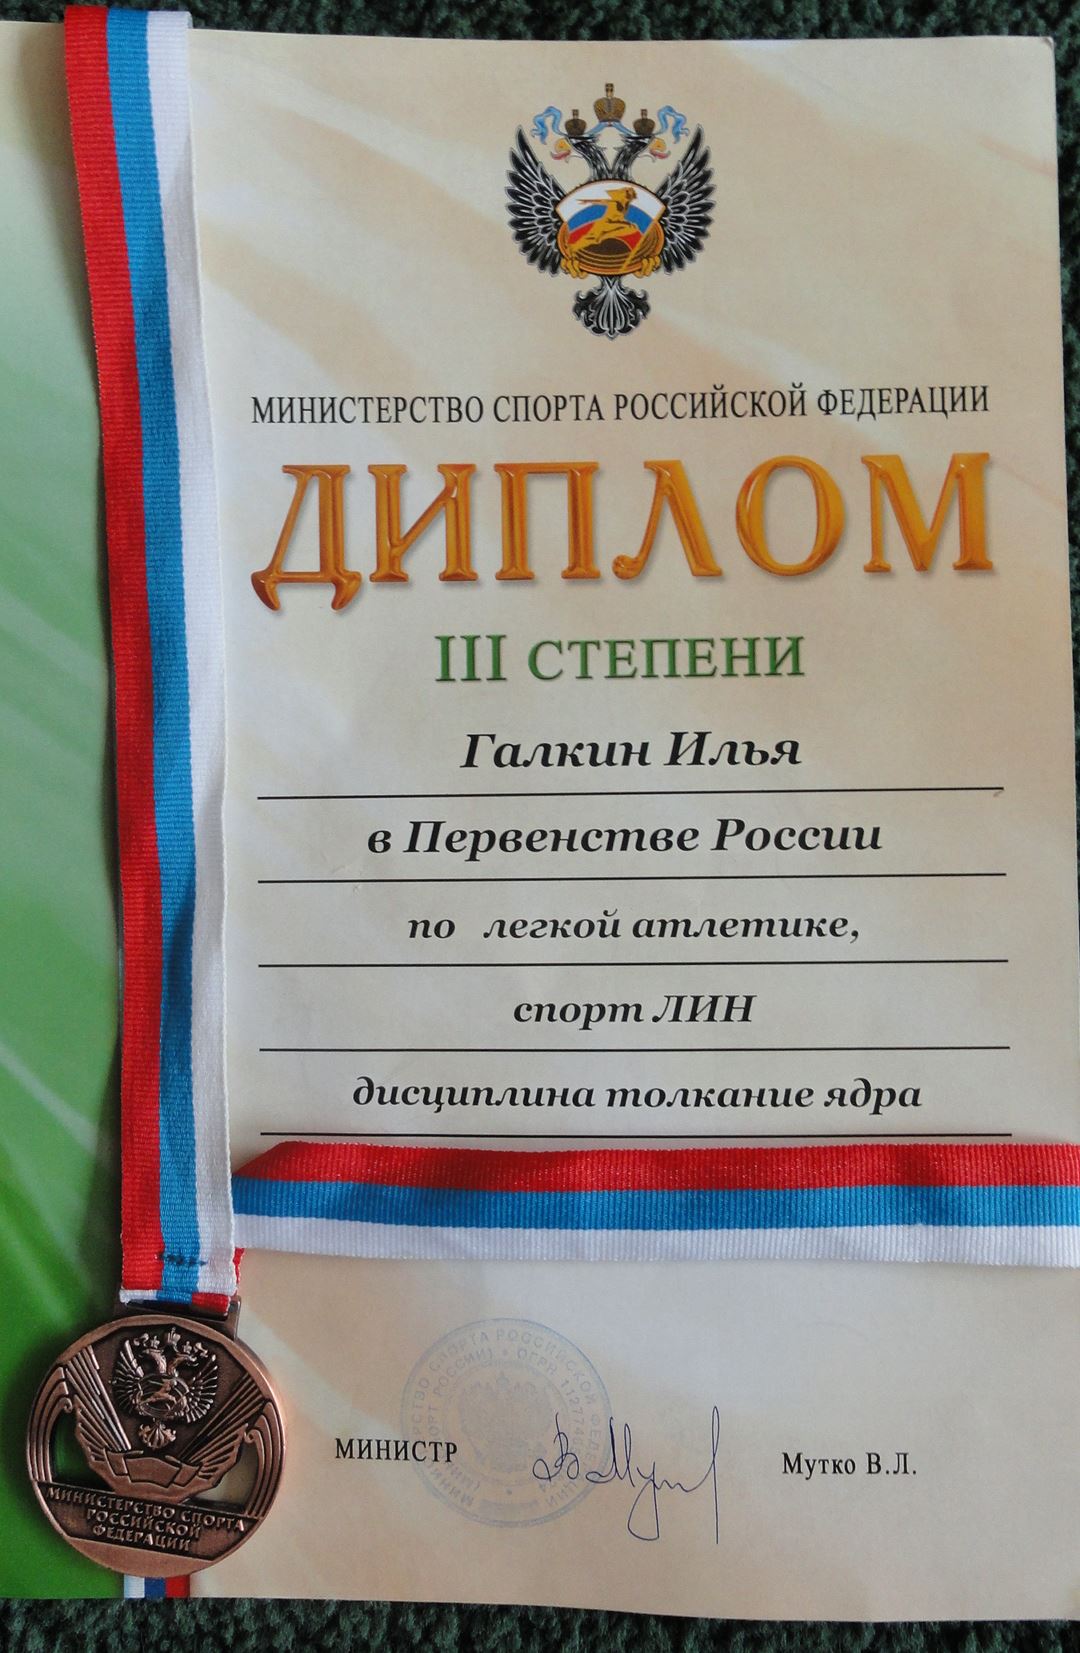 Учащаяся нашей школы заняла 3 место в Первенстве России по легкой атлетики, спорт ЛИН в дисциплине толкание ядра